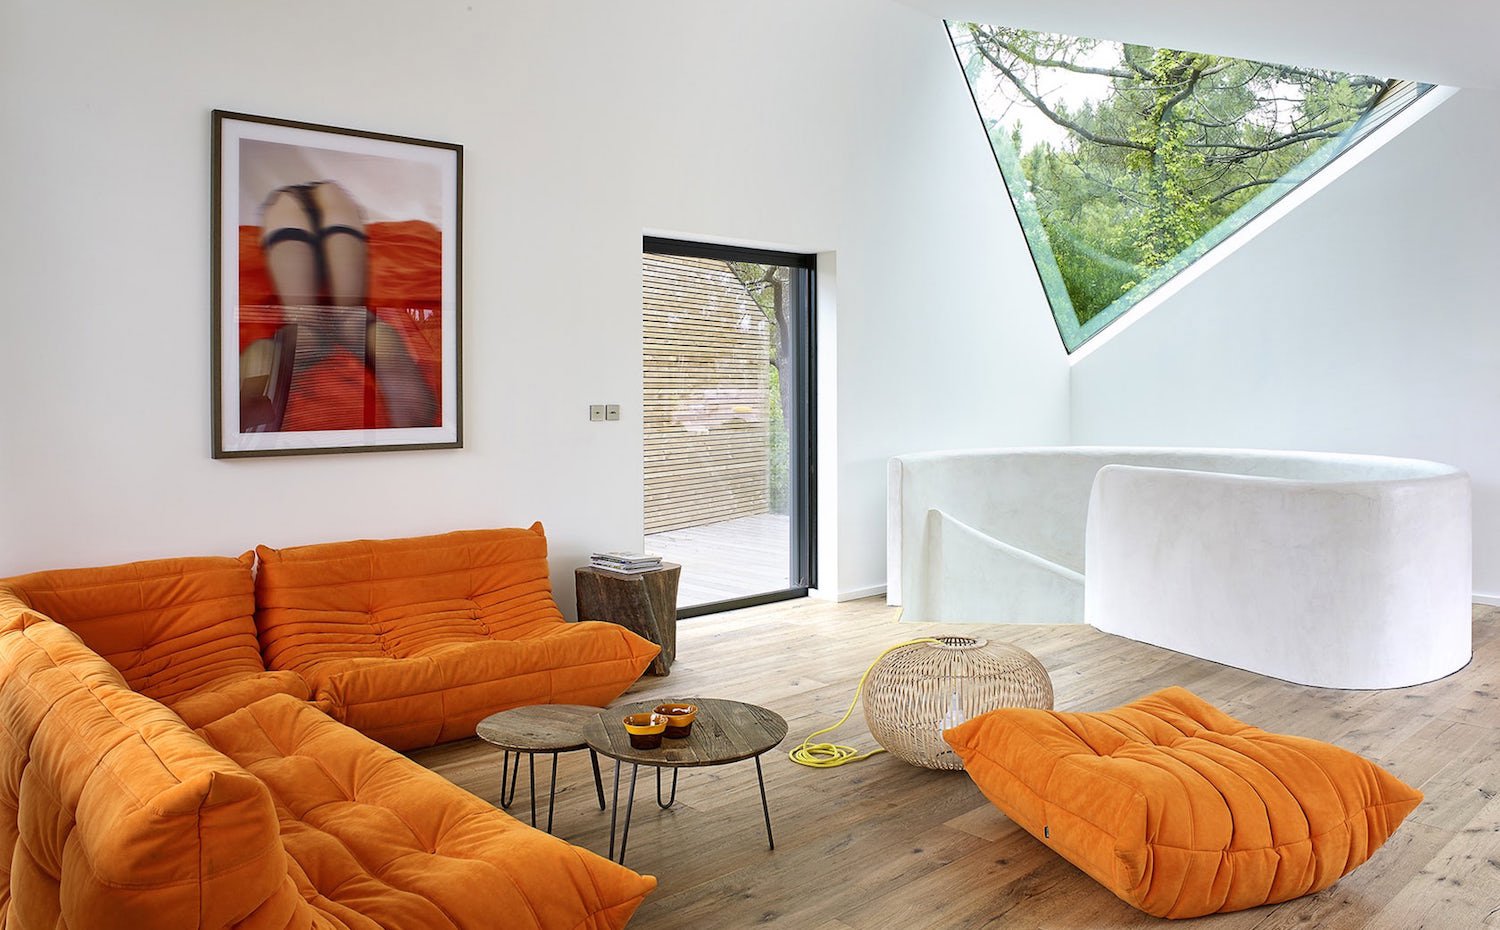 Casa de vacaciones en mitad del bosque sofas Togo en color naranja